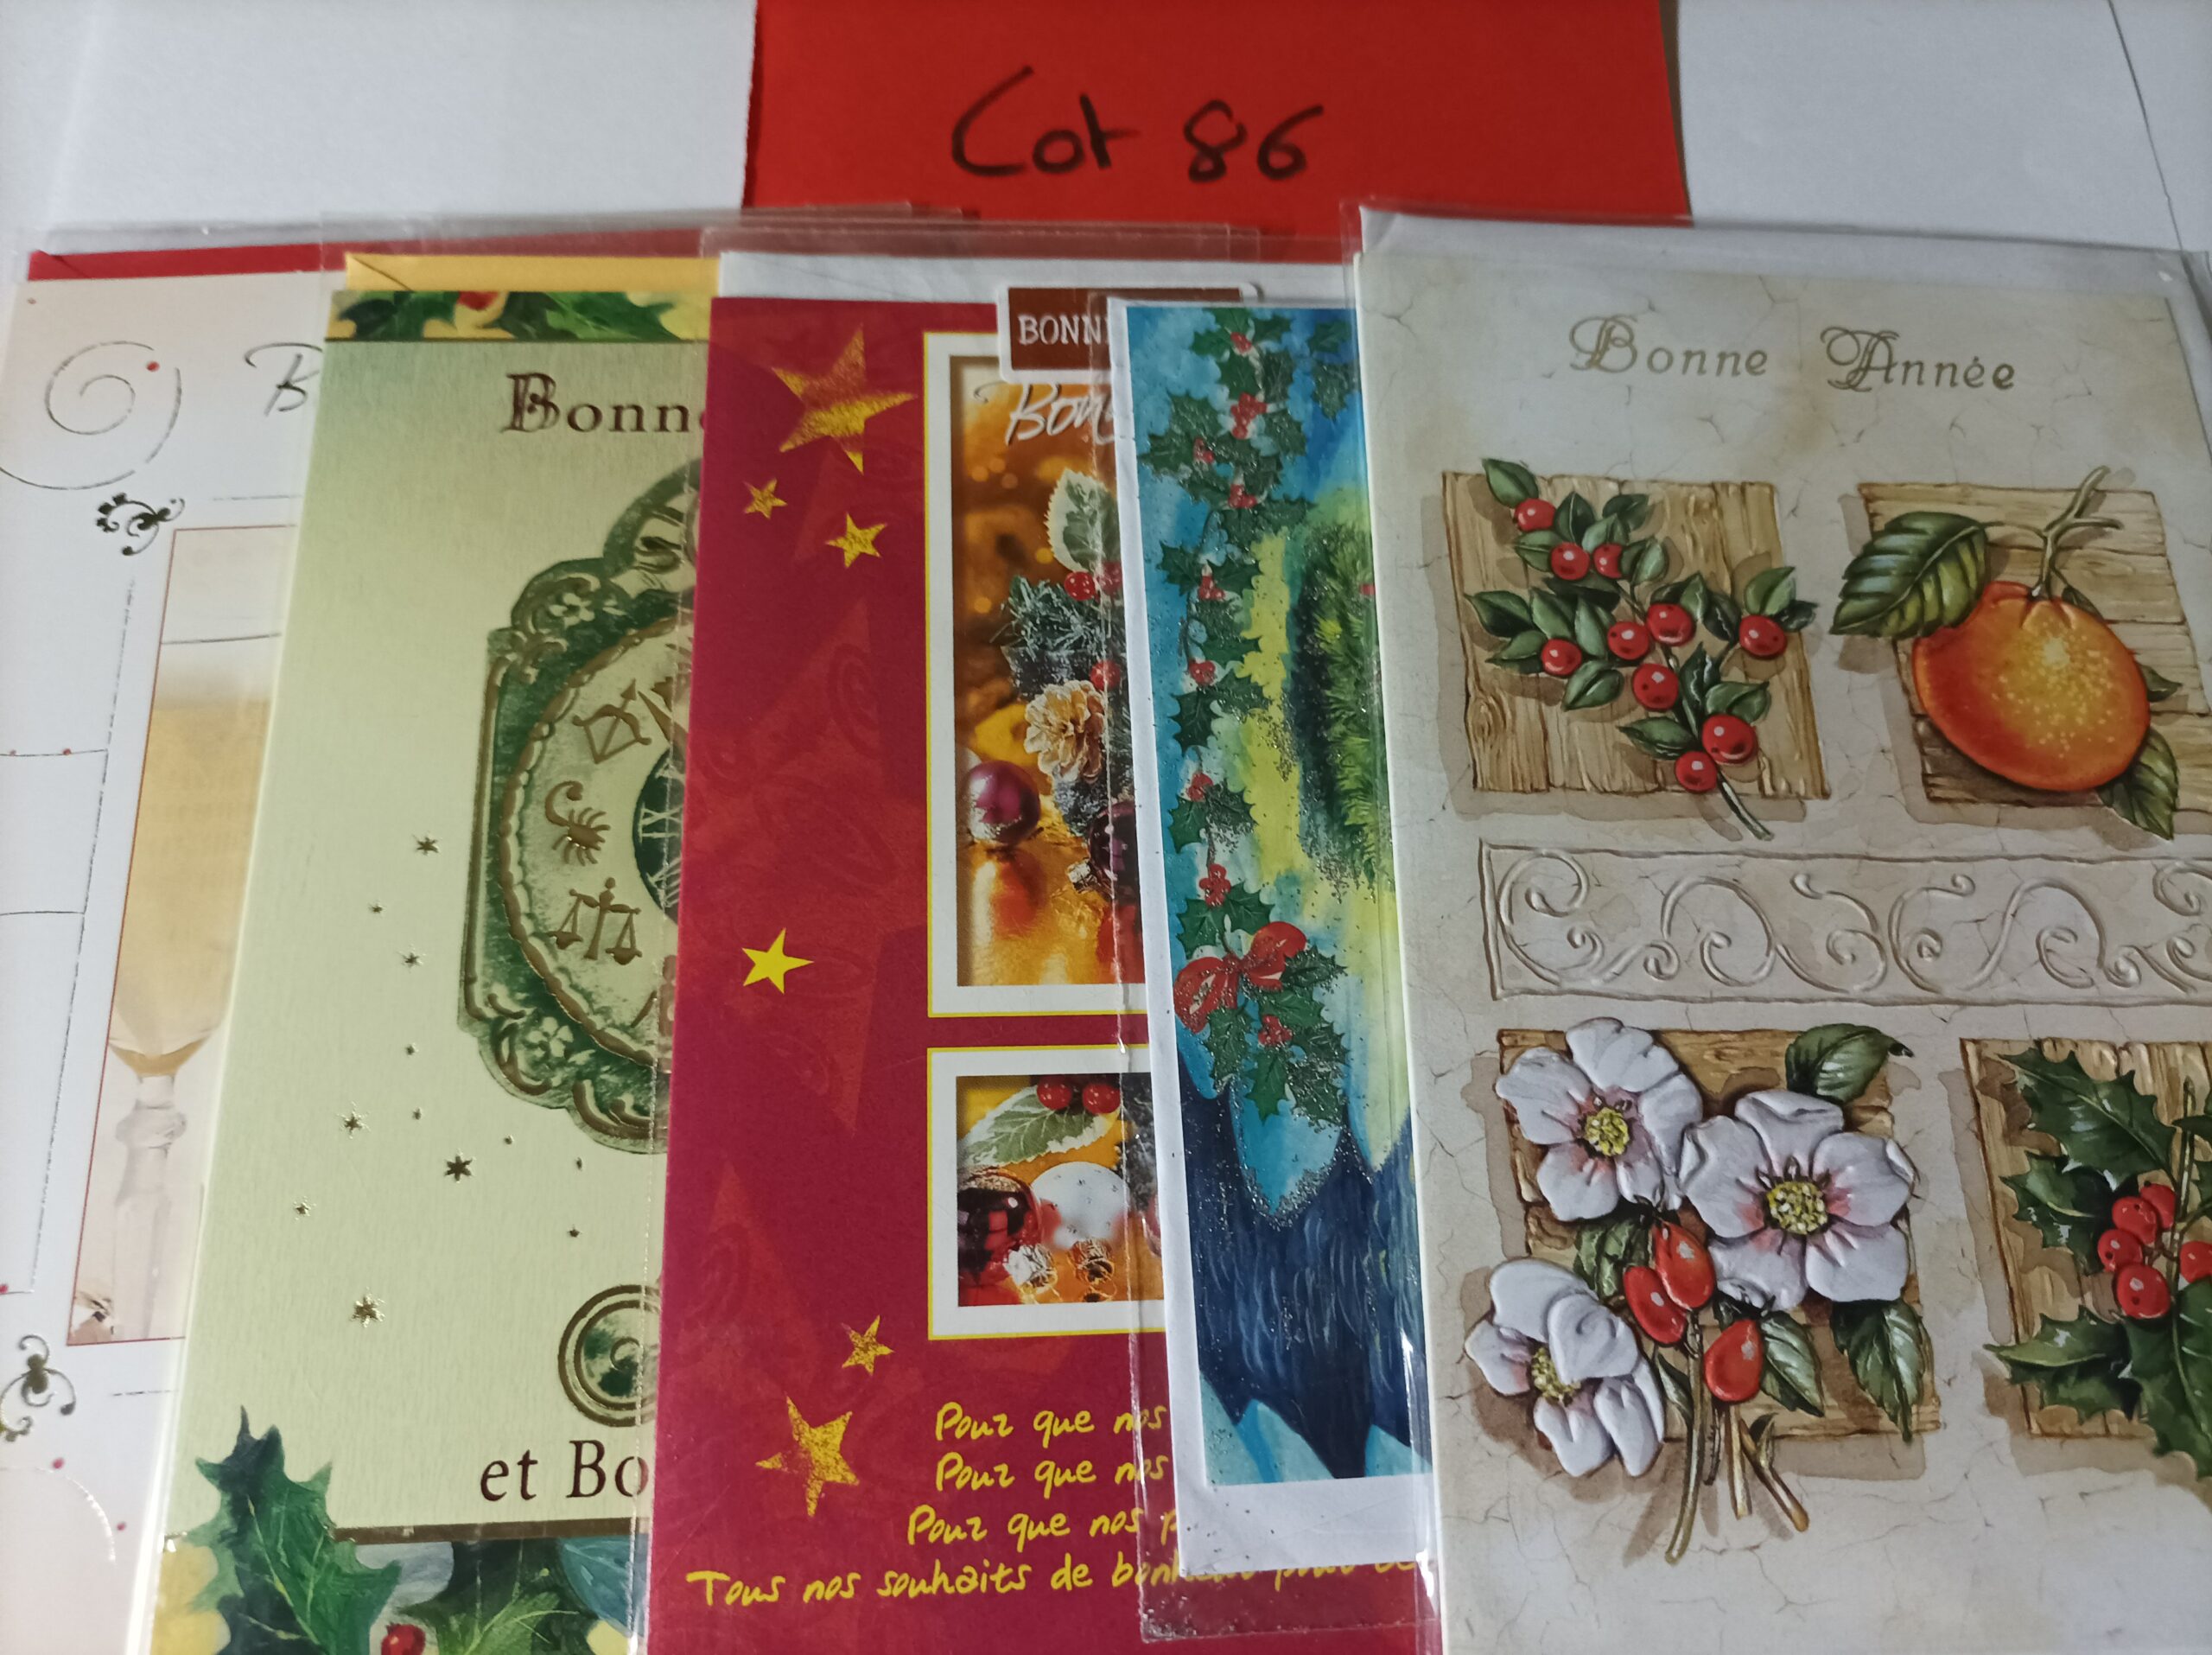 Lot de 5 cartes postales + enveloppes bonne année (lot 86)